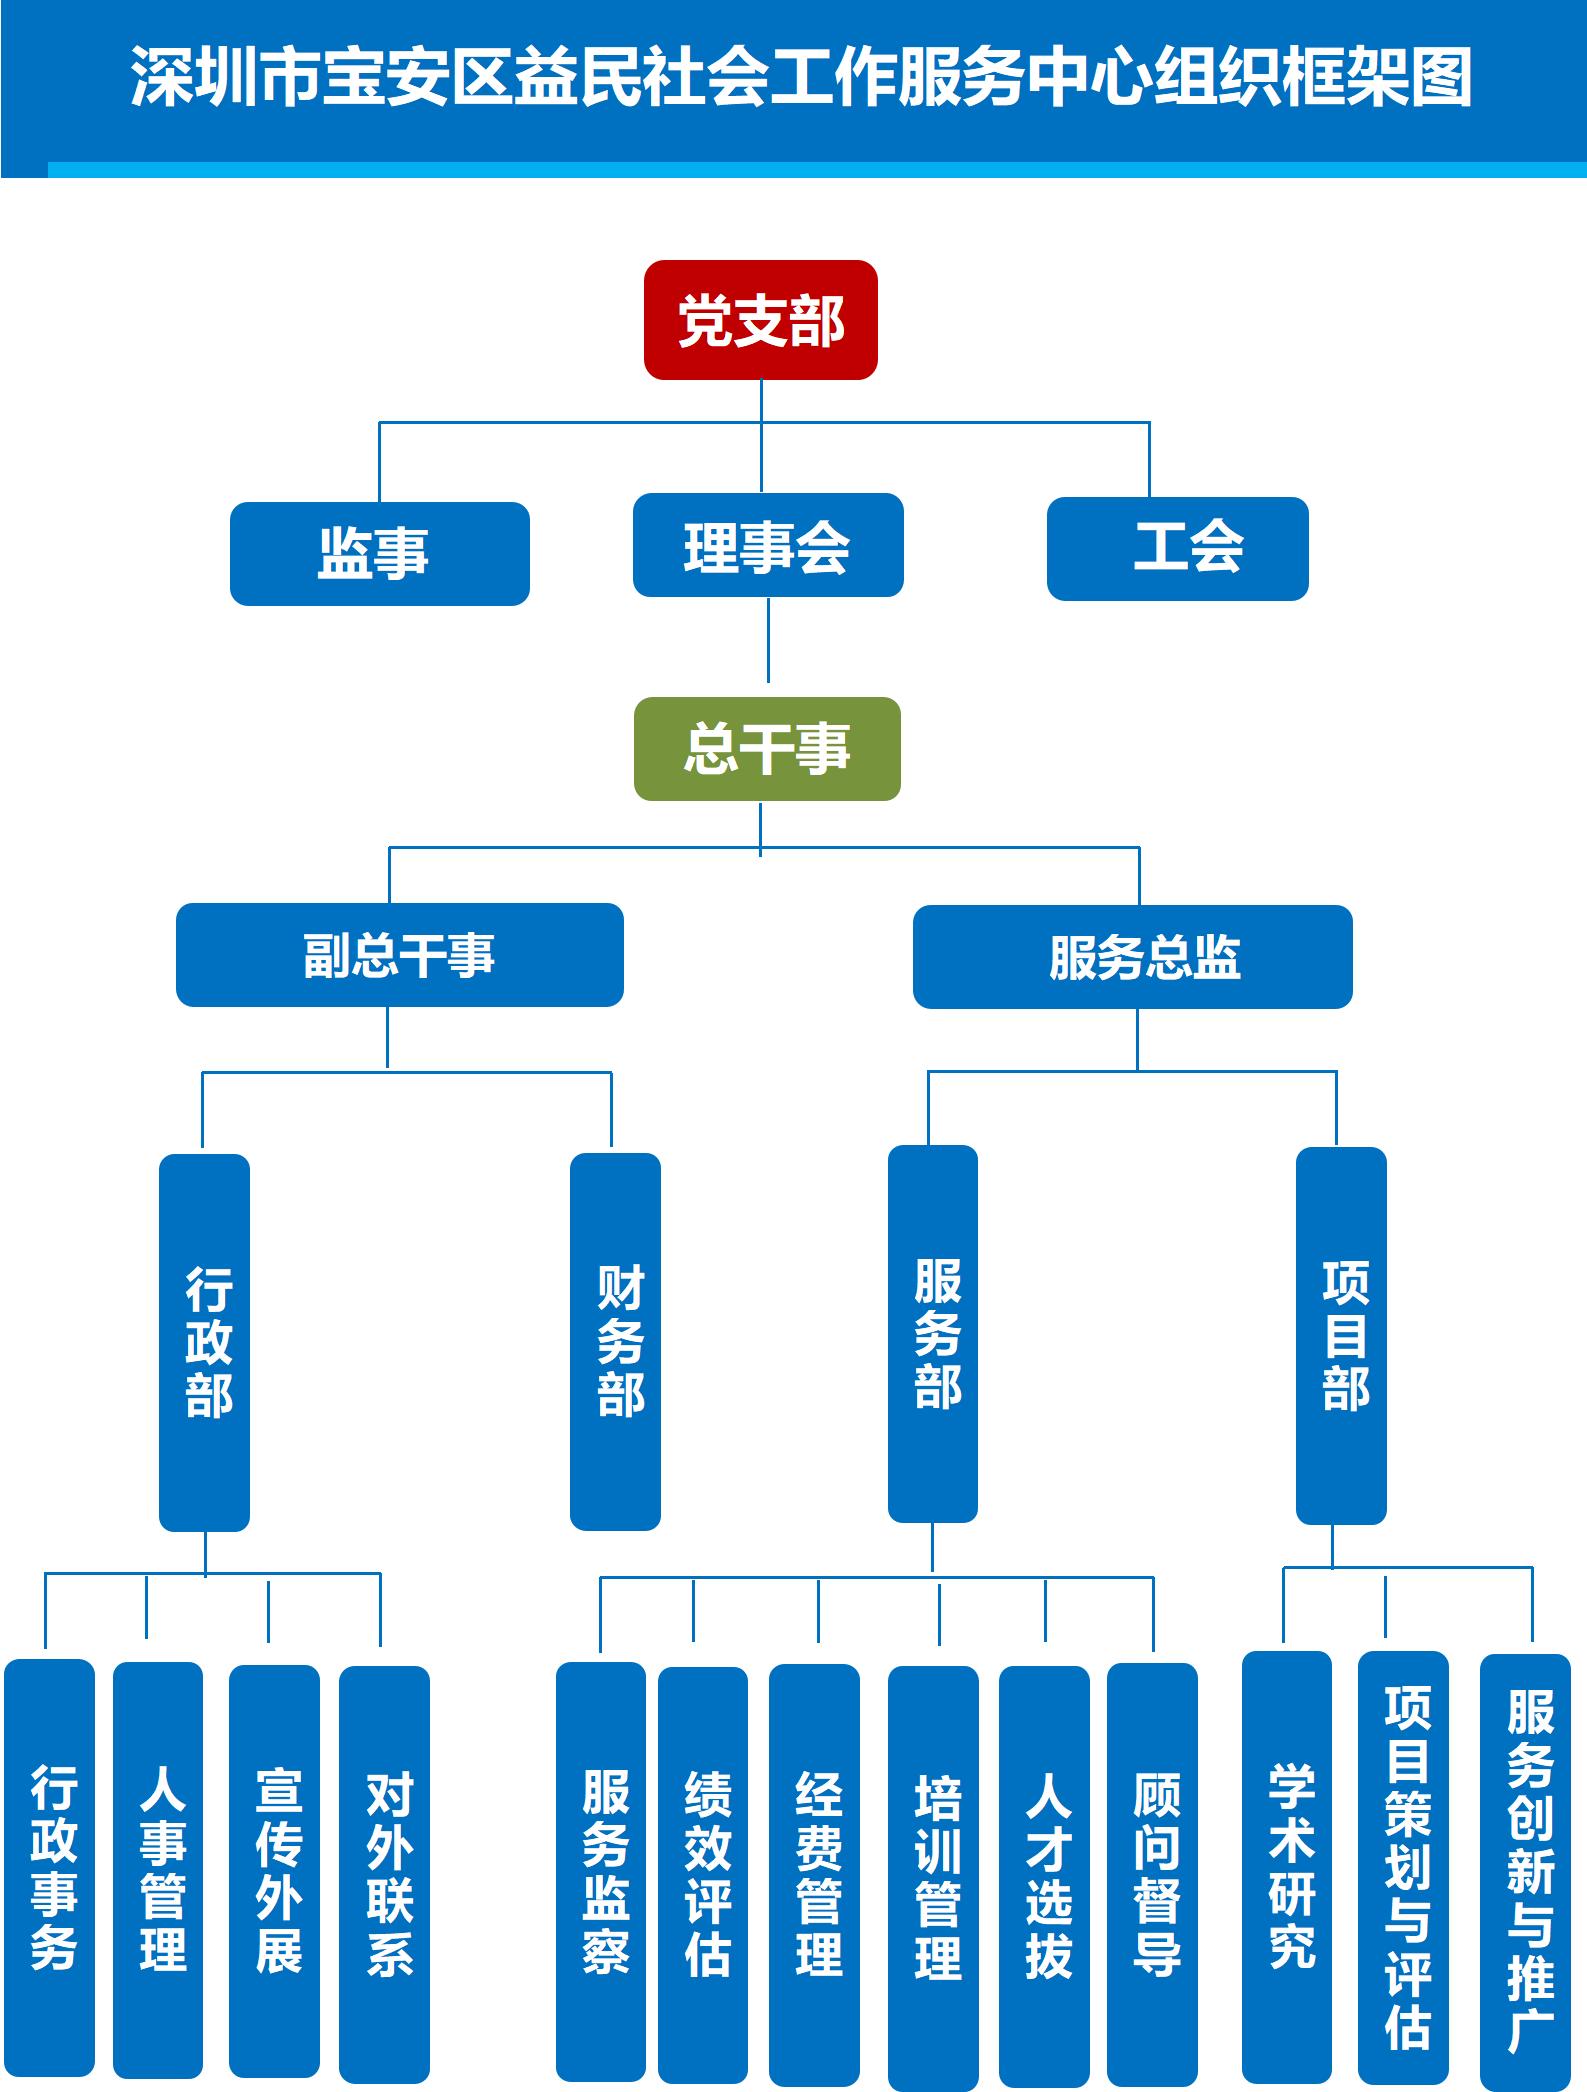 益民社会工作服务中心组织框架图_01.jpg